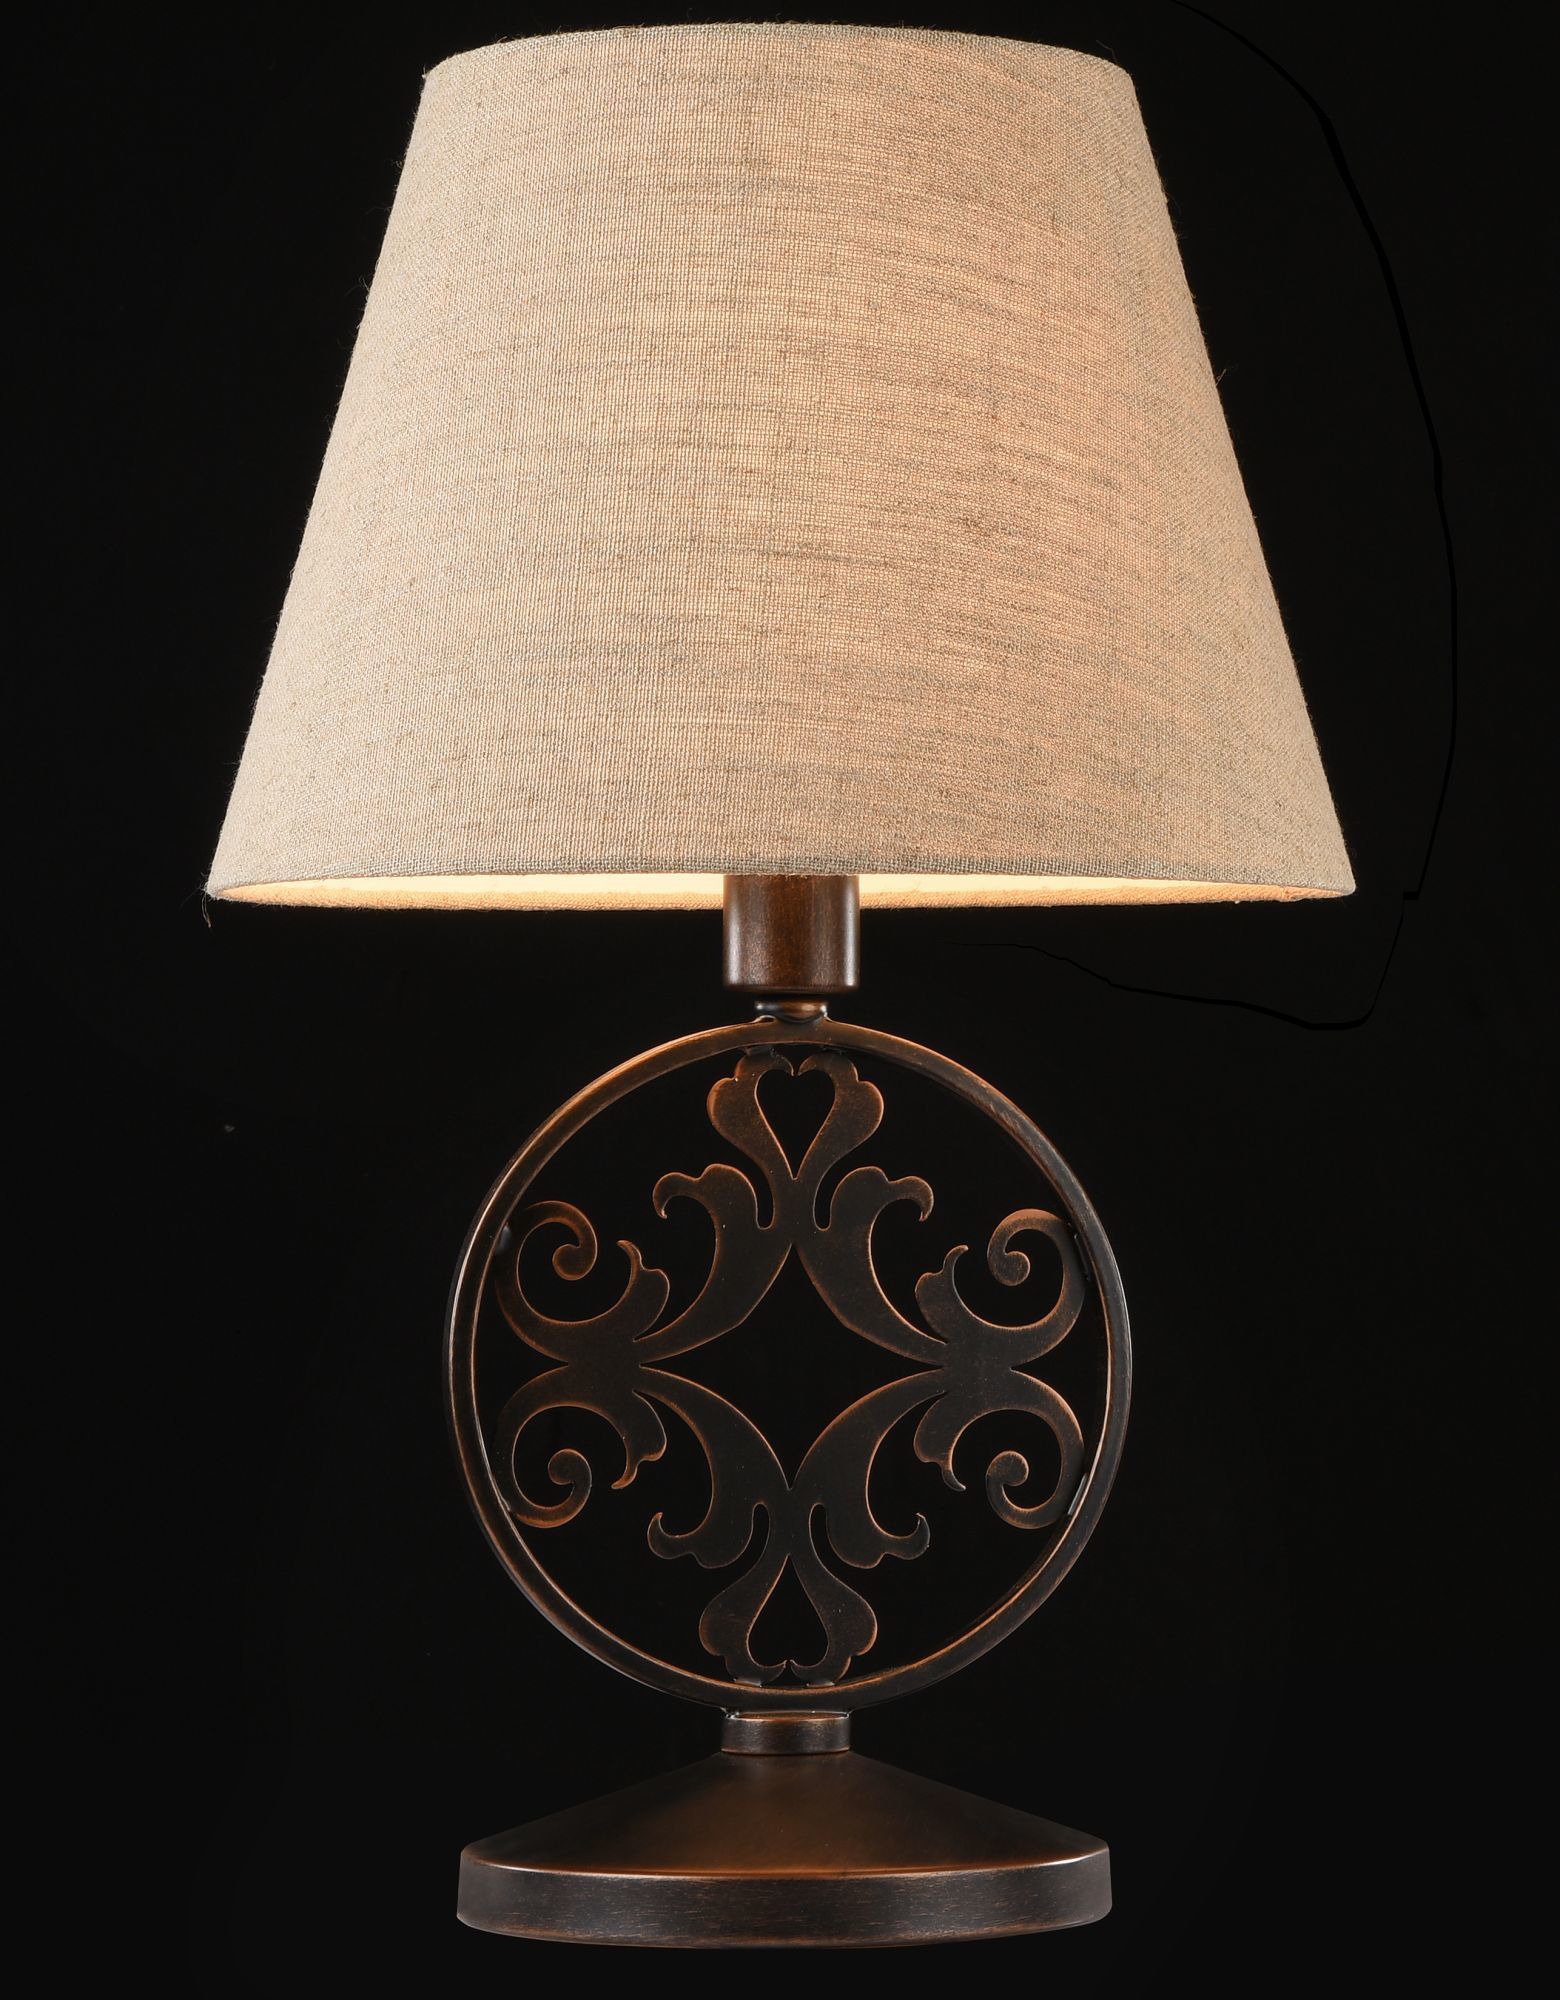 Настольная лампа Maytoni Rustika H899-22-R, 1xE27x40W, коричневый, бежевый, металл, ковка, текстиль - фото 4